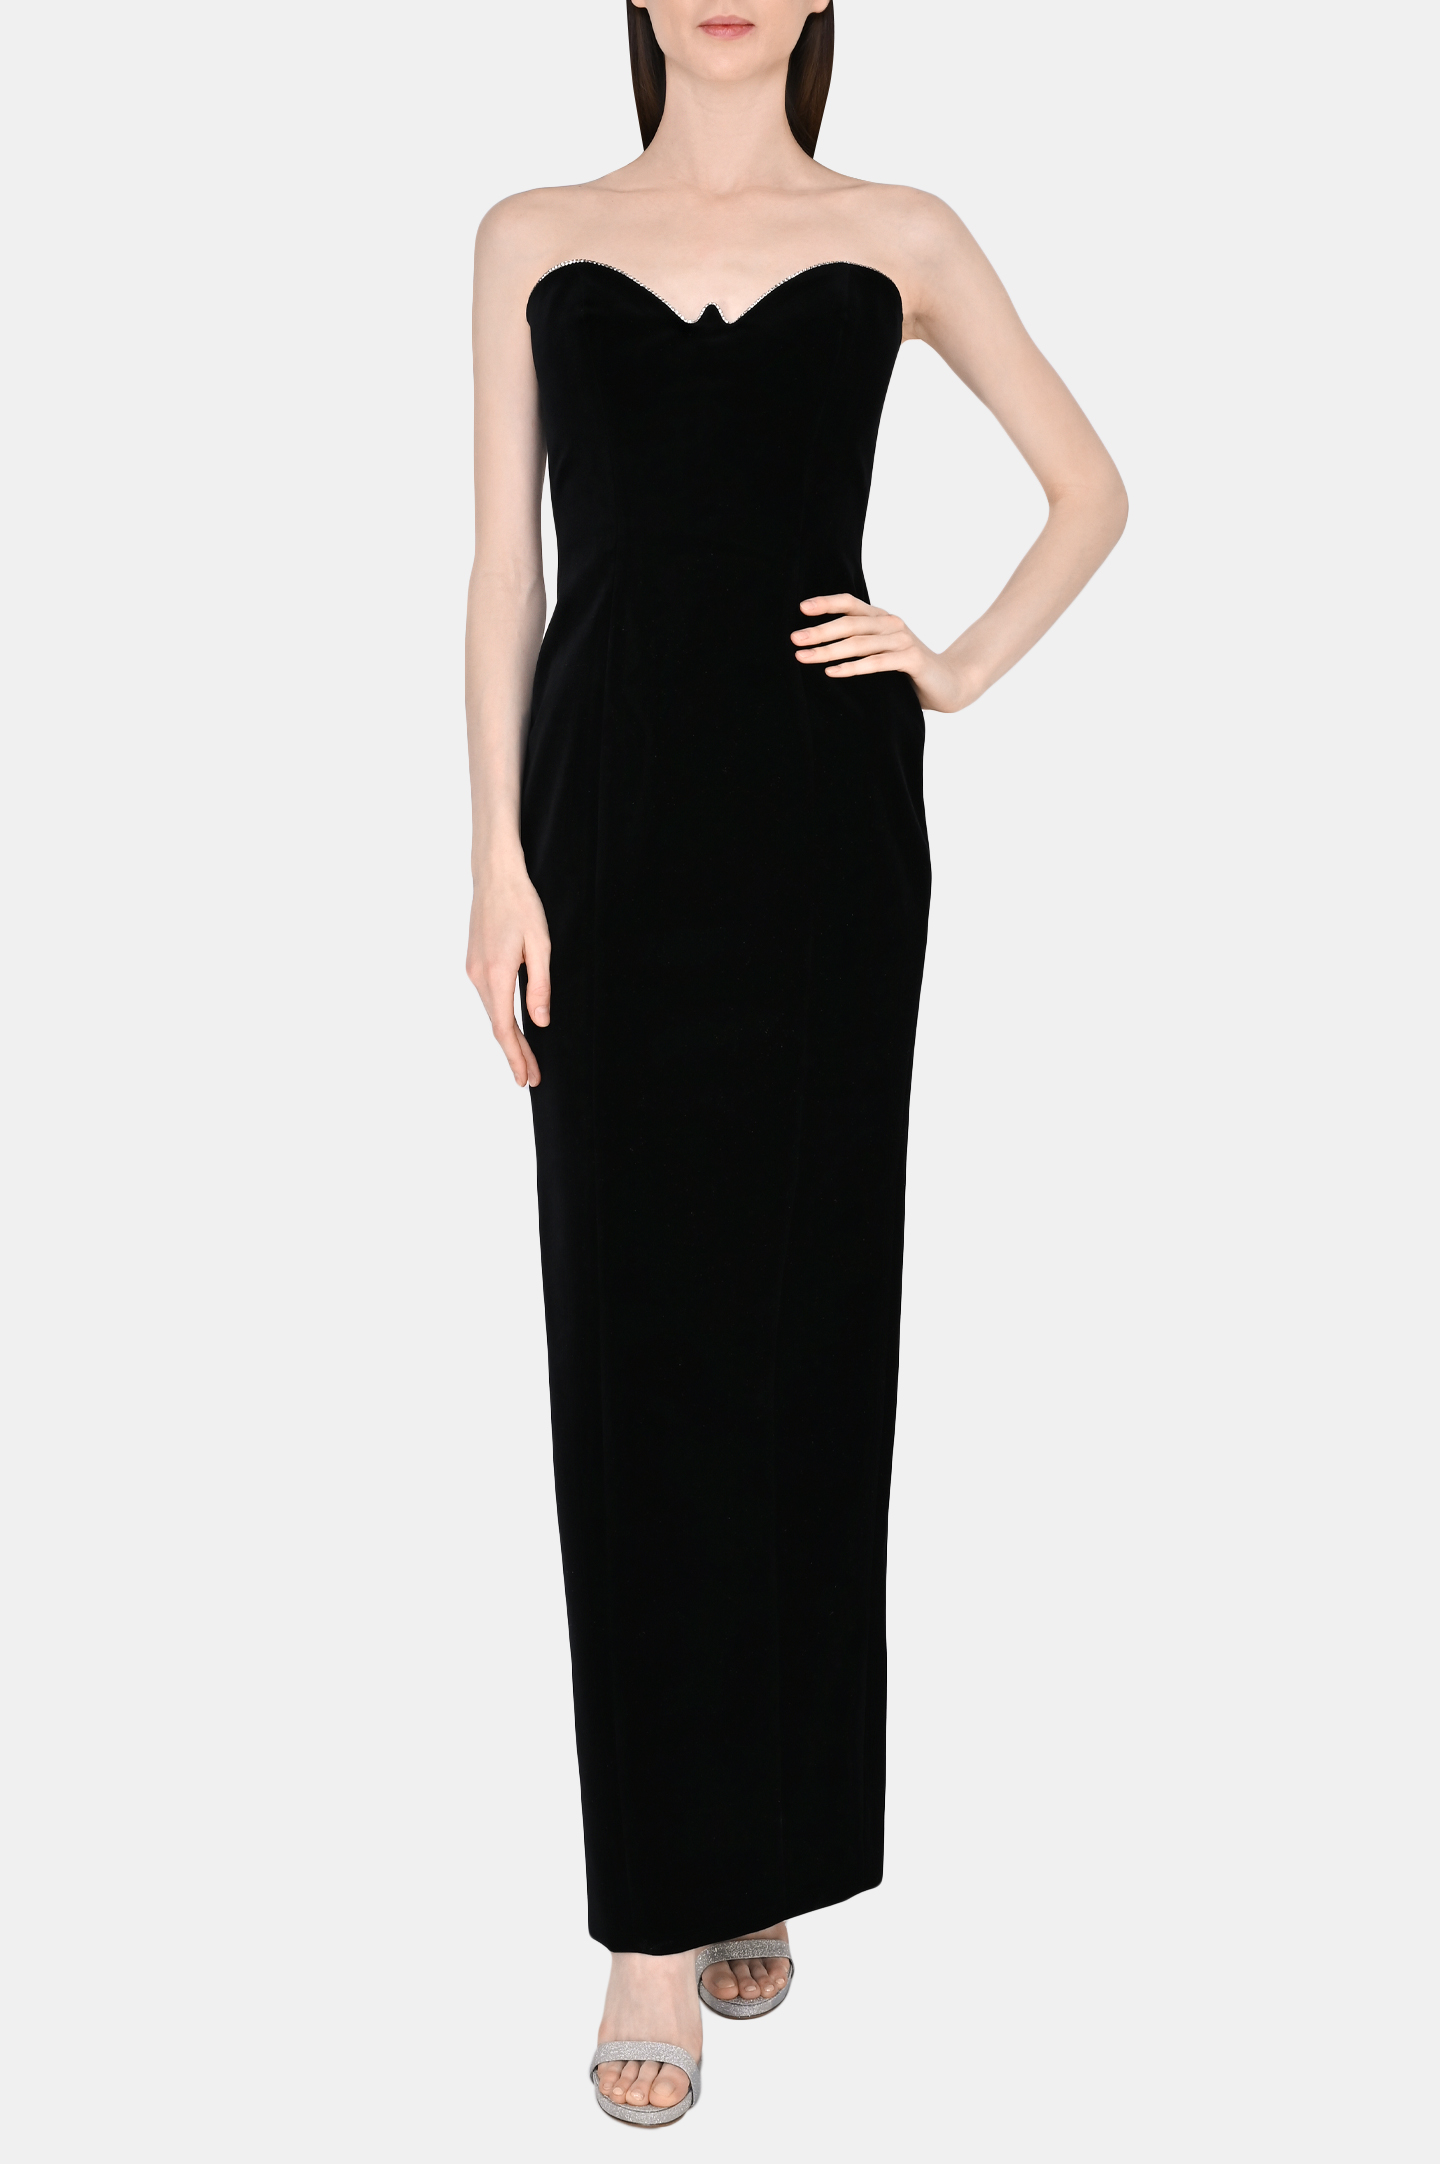 Платье ALEXANDRE VAUTHIER 223DR1718B 1719-223, цвет: Черный, Женский